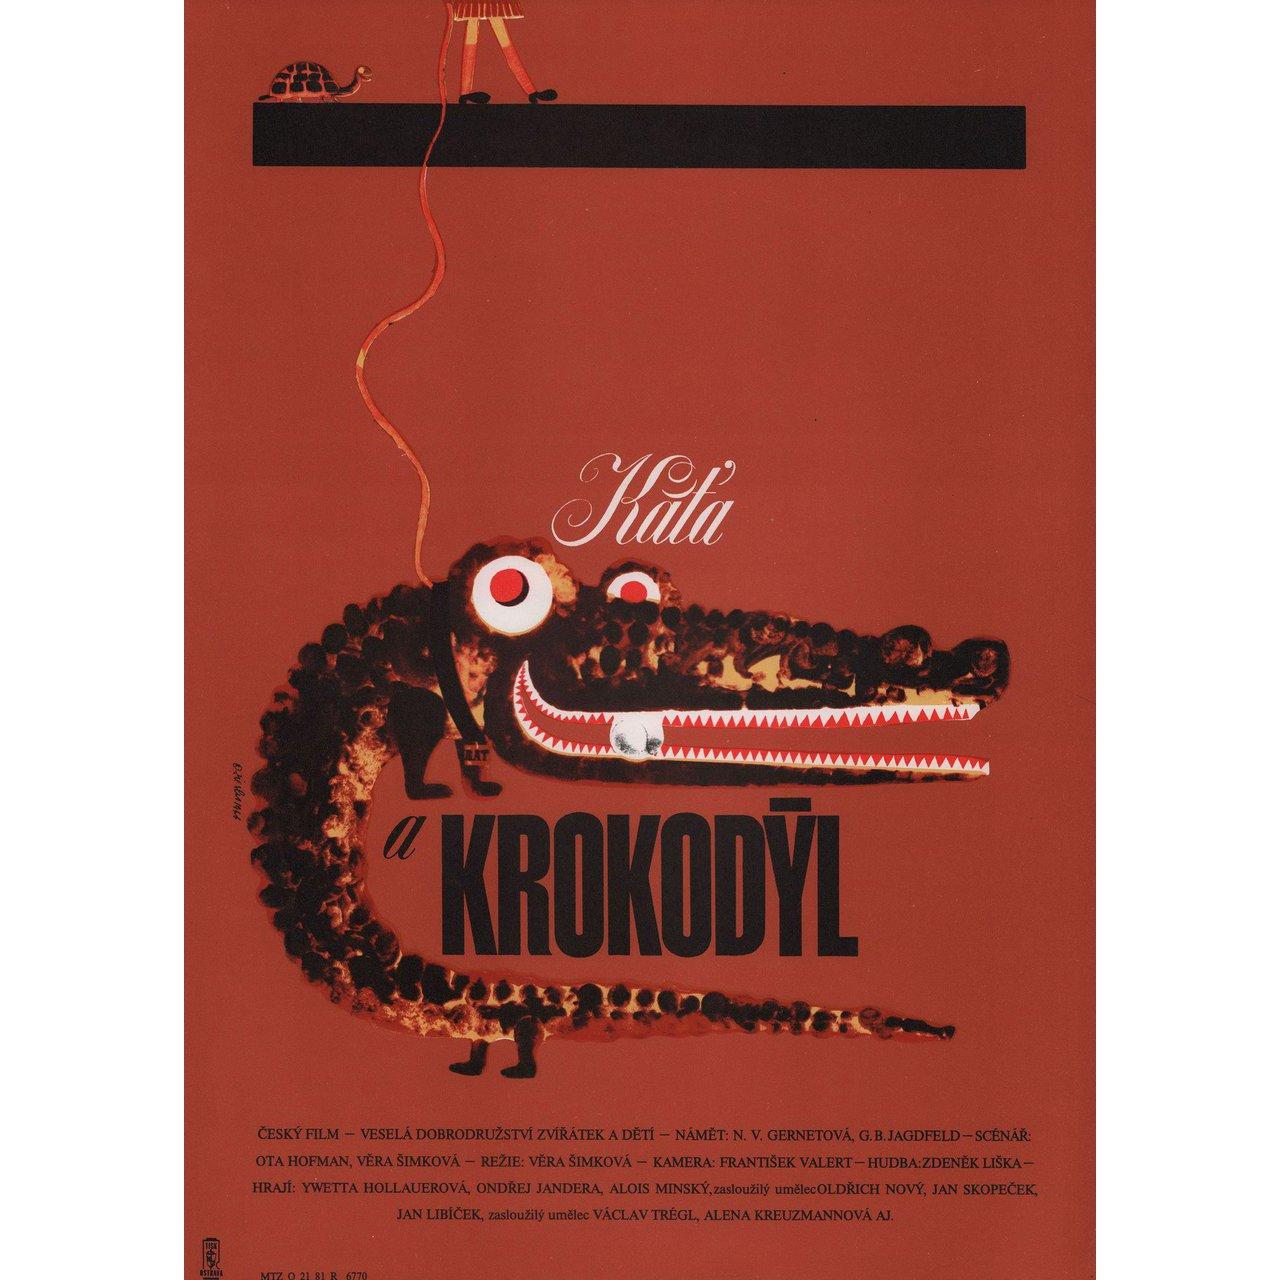 Originales tschechisches A3-Plakat aus den 1980er Jahren von Zdenek Ziegler für den Film Katia und das Krokodil (Kata a krokodyl) von 1966 unter der Regie von Vera Plivova-Simkova mit Alena Cechova / Andrea Cunderlikova / Tomas Drbohlav / Alois